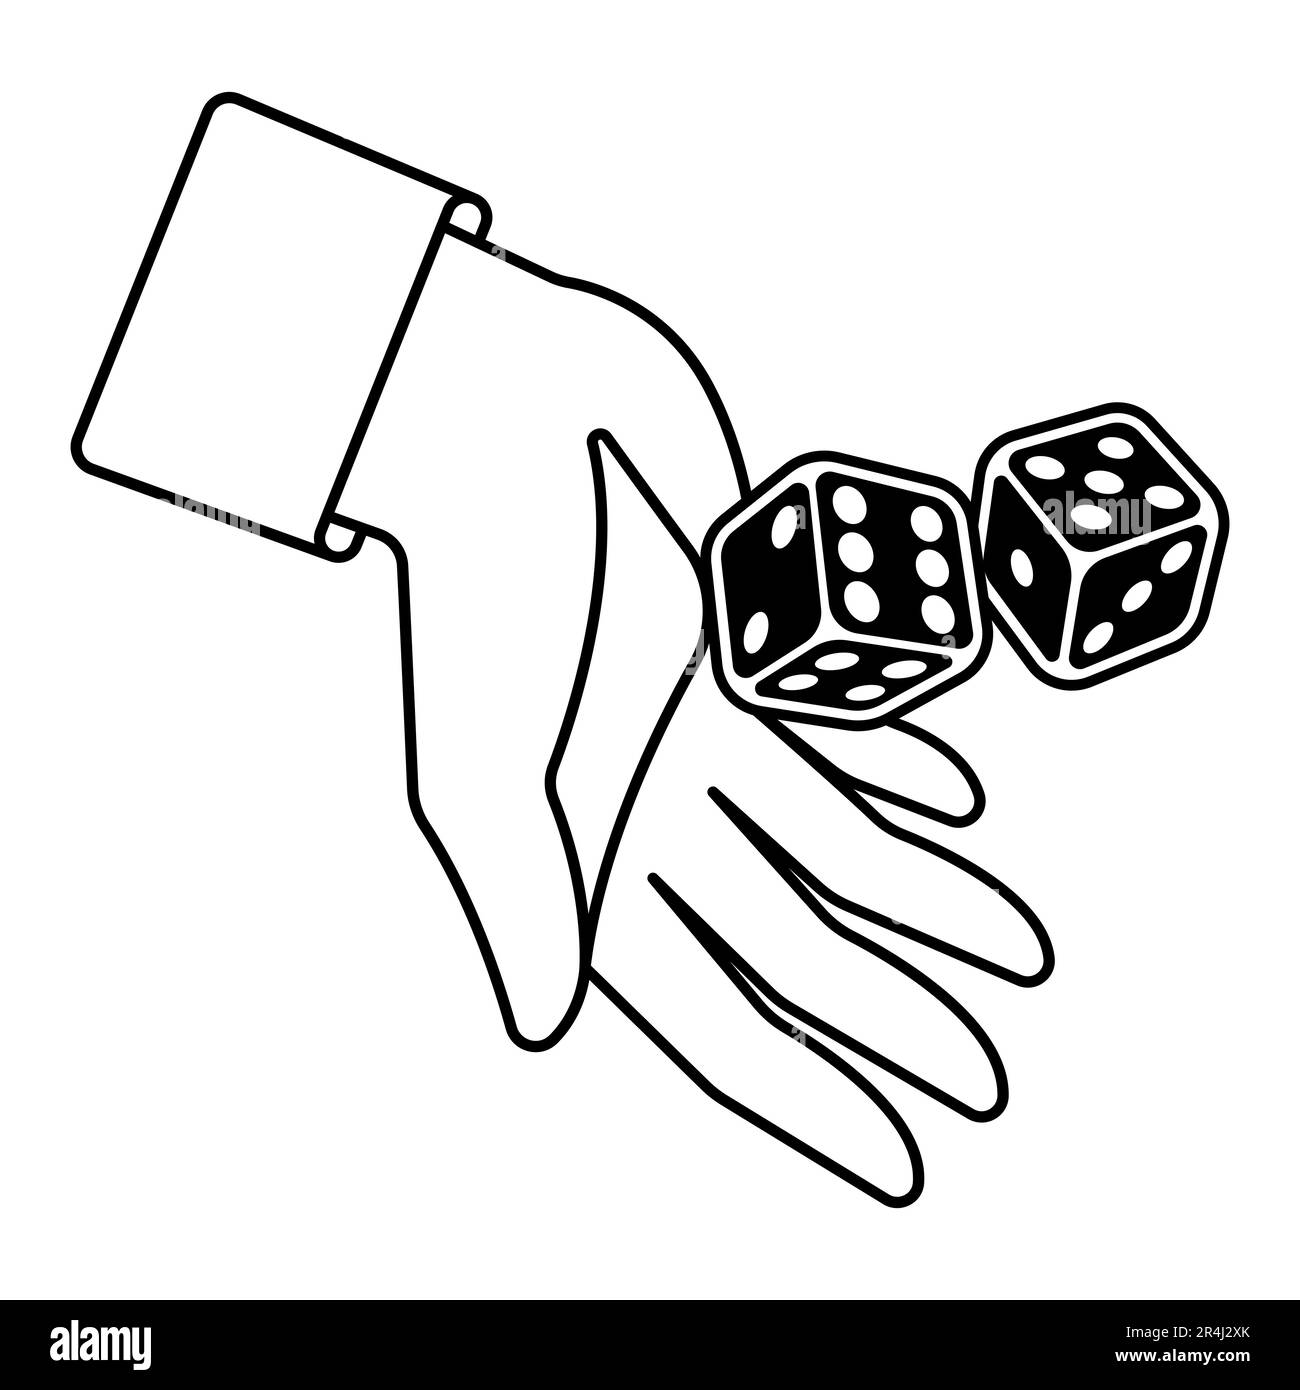 Illustrazione del gioco dei dadi. Immagine del gioco craps. Casinò e scommesse di base. Illustrazione Vettoriale